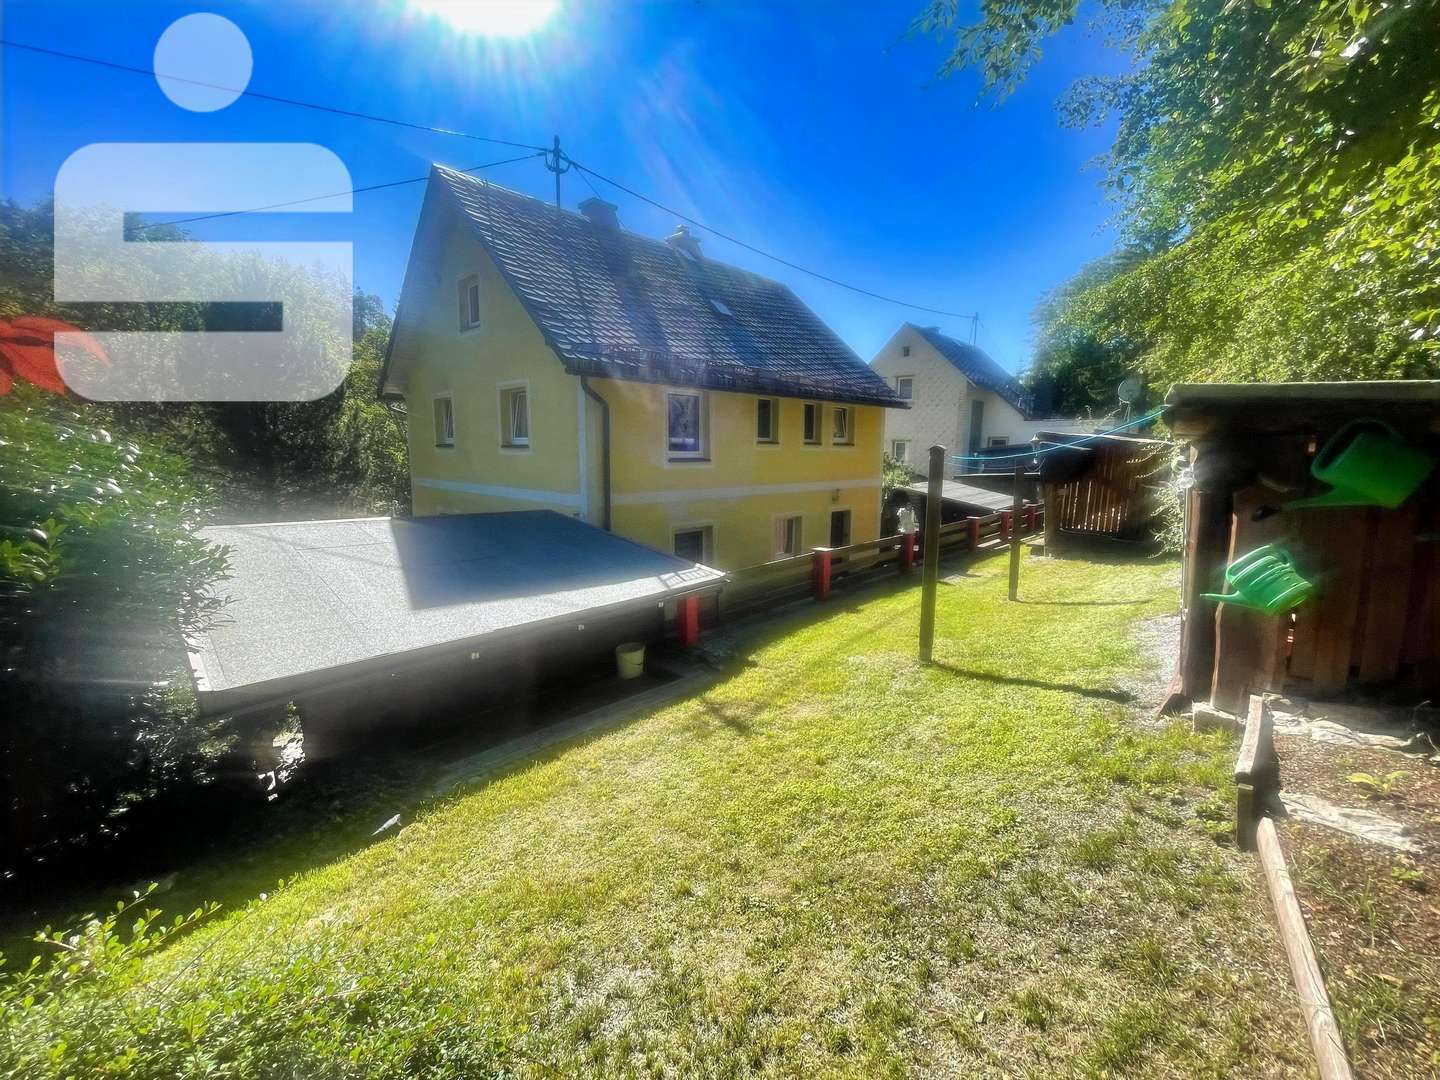 IMG_4561 - Zweifamilienhaus in 95131 Schwarzenbach a.Wald mit 147m² kaufen